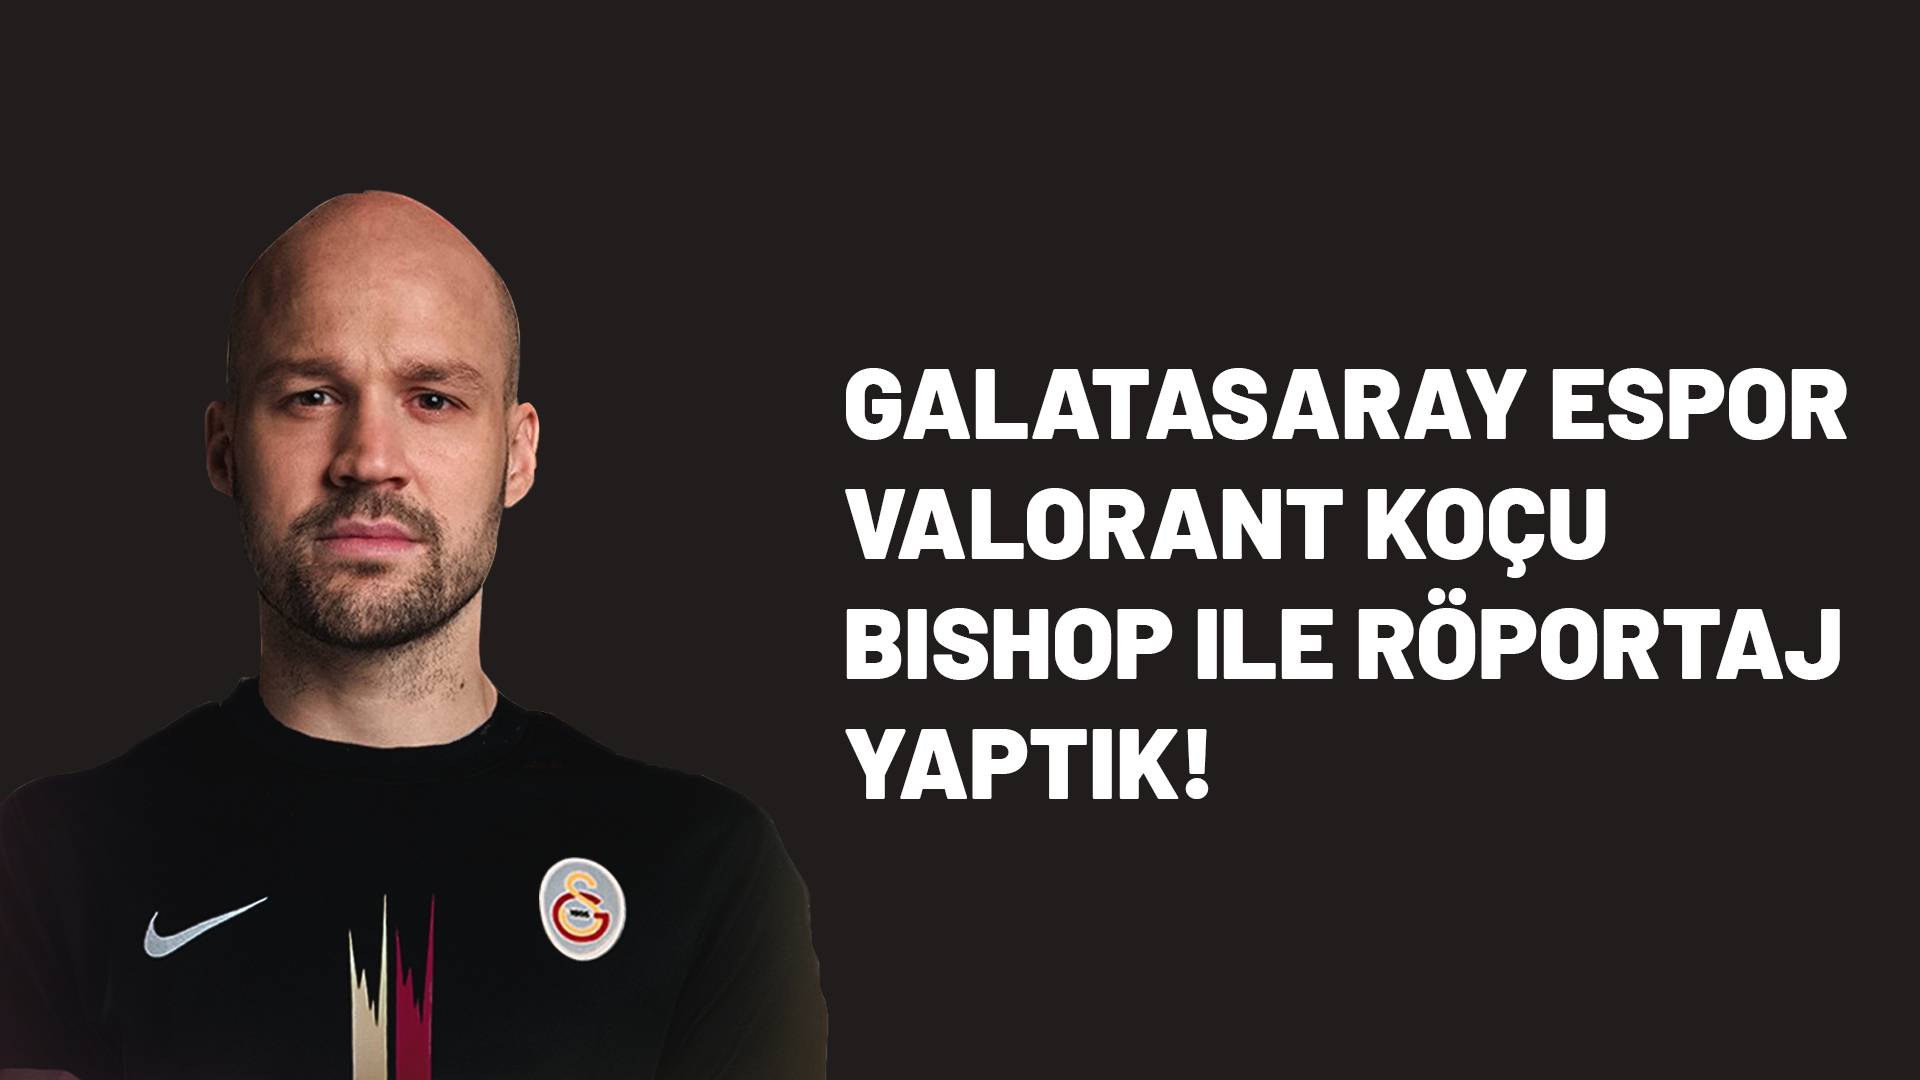 Galatasaray Espor VALORANT Koçu bishop ile Röportaj Yaptık!